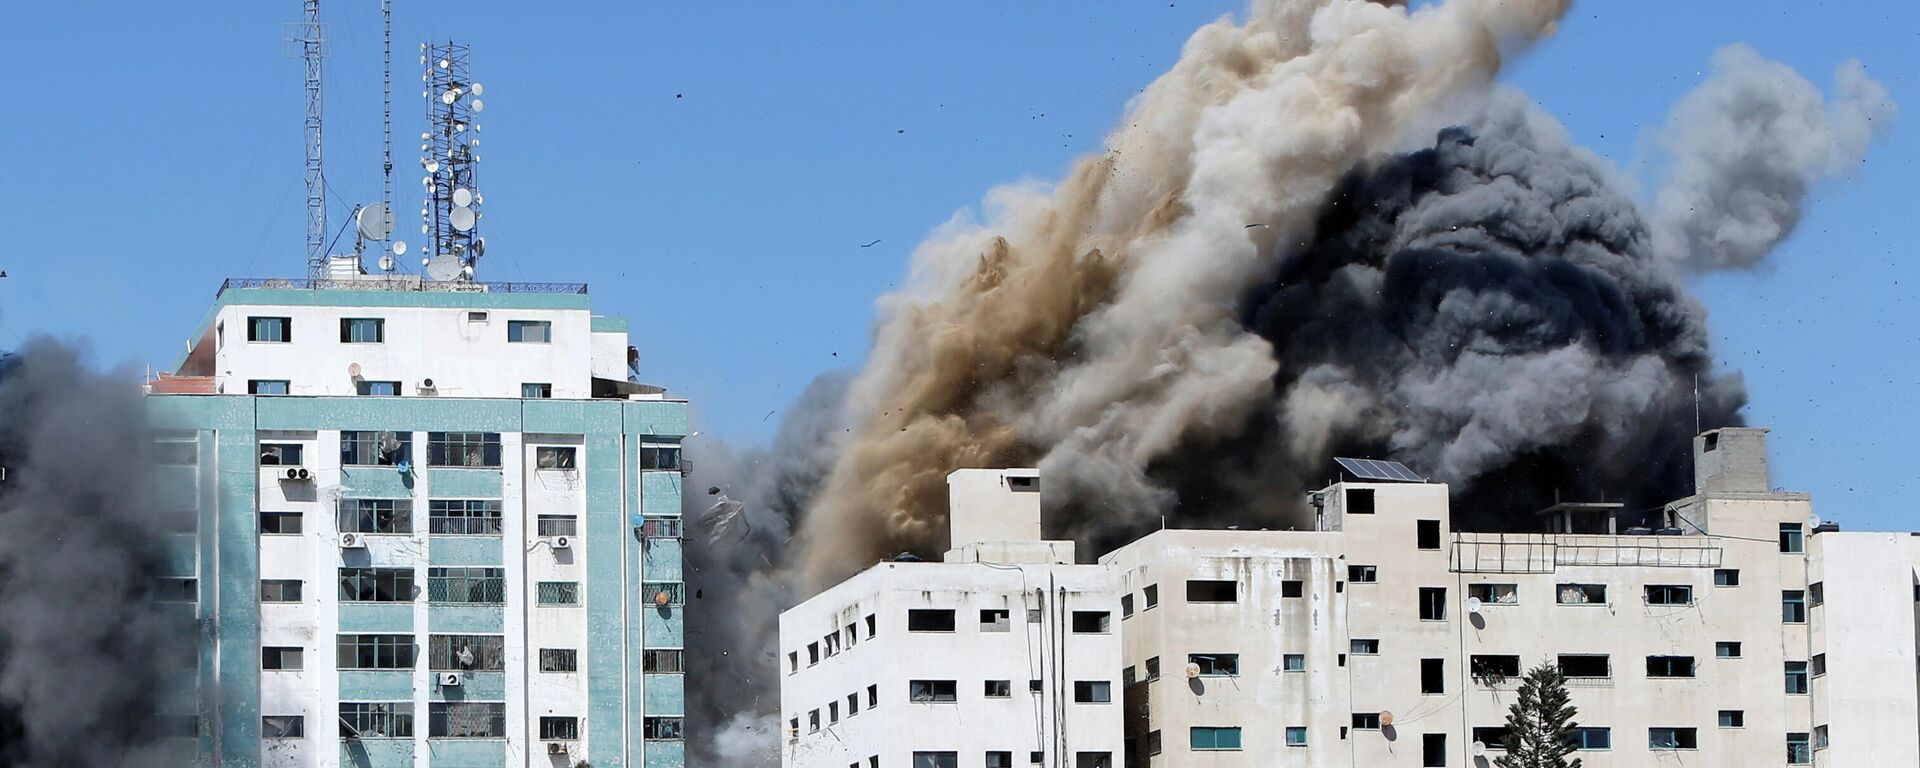 Las oficinas de AP y Al Jazeera se derrumban tras los ataques de misiles israelíes en la ciudad de Gaza, el 15 de mayo de 2021 - Sputnik Mundo, 1920, 15.05.2021